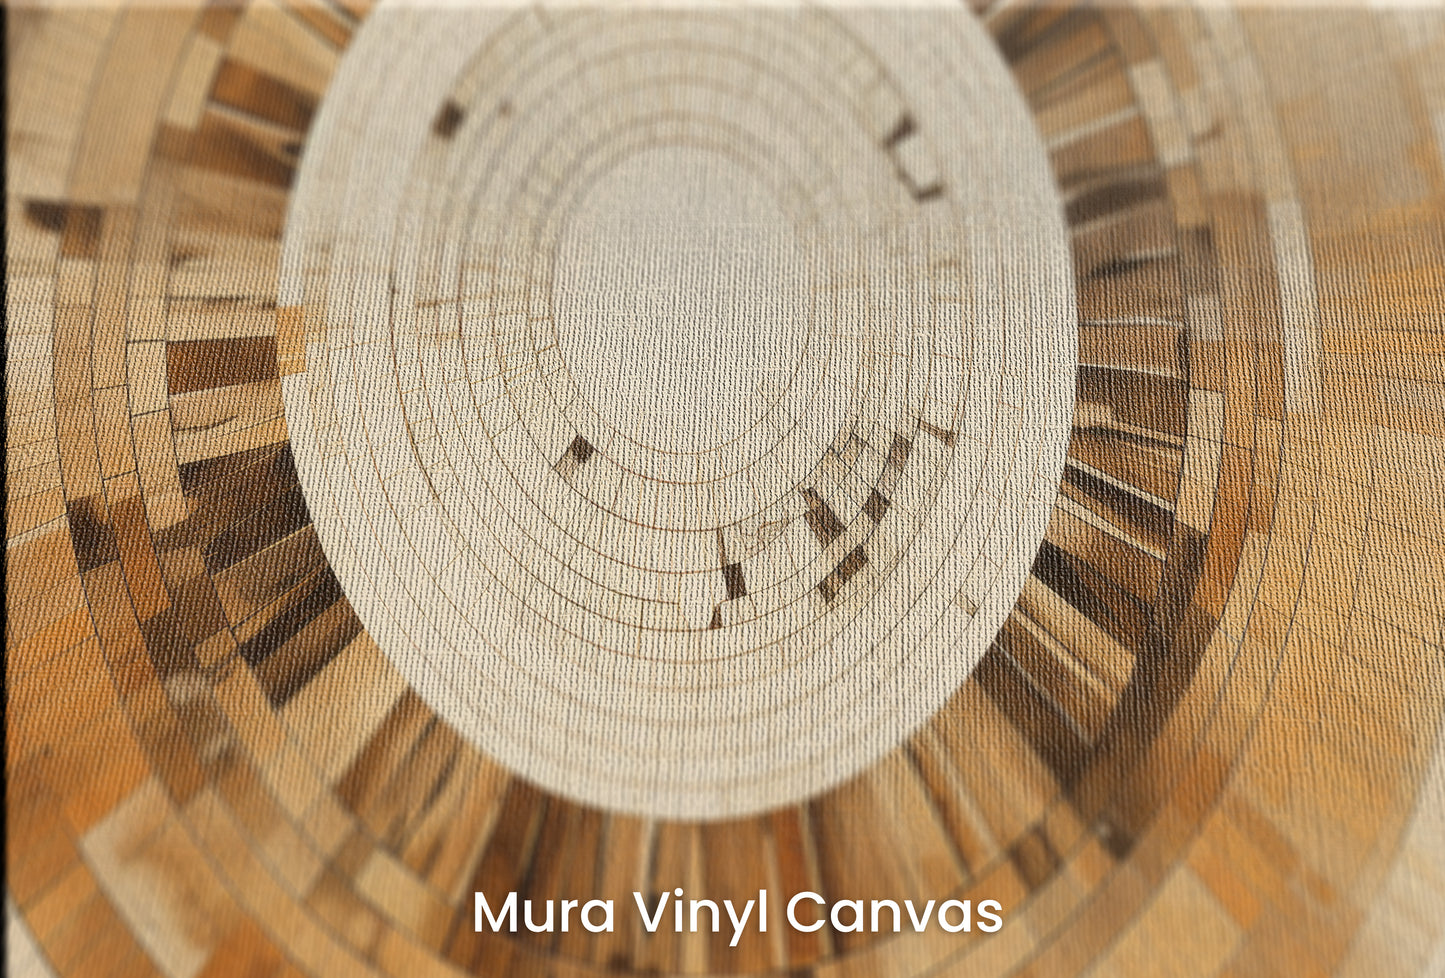 Zbliżenie na artystyczną fototapetę o nazwie ARCHITECTURAL ORBITAL DESIGN na podłożu Mura Vinyl Canvas - faktura naturalnego płótna.